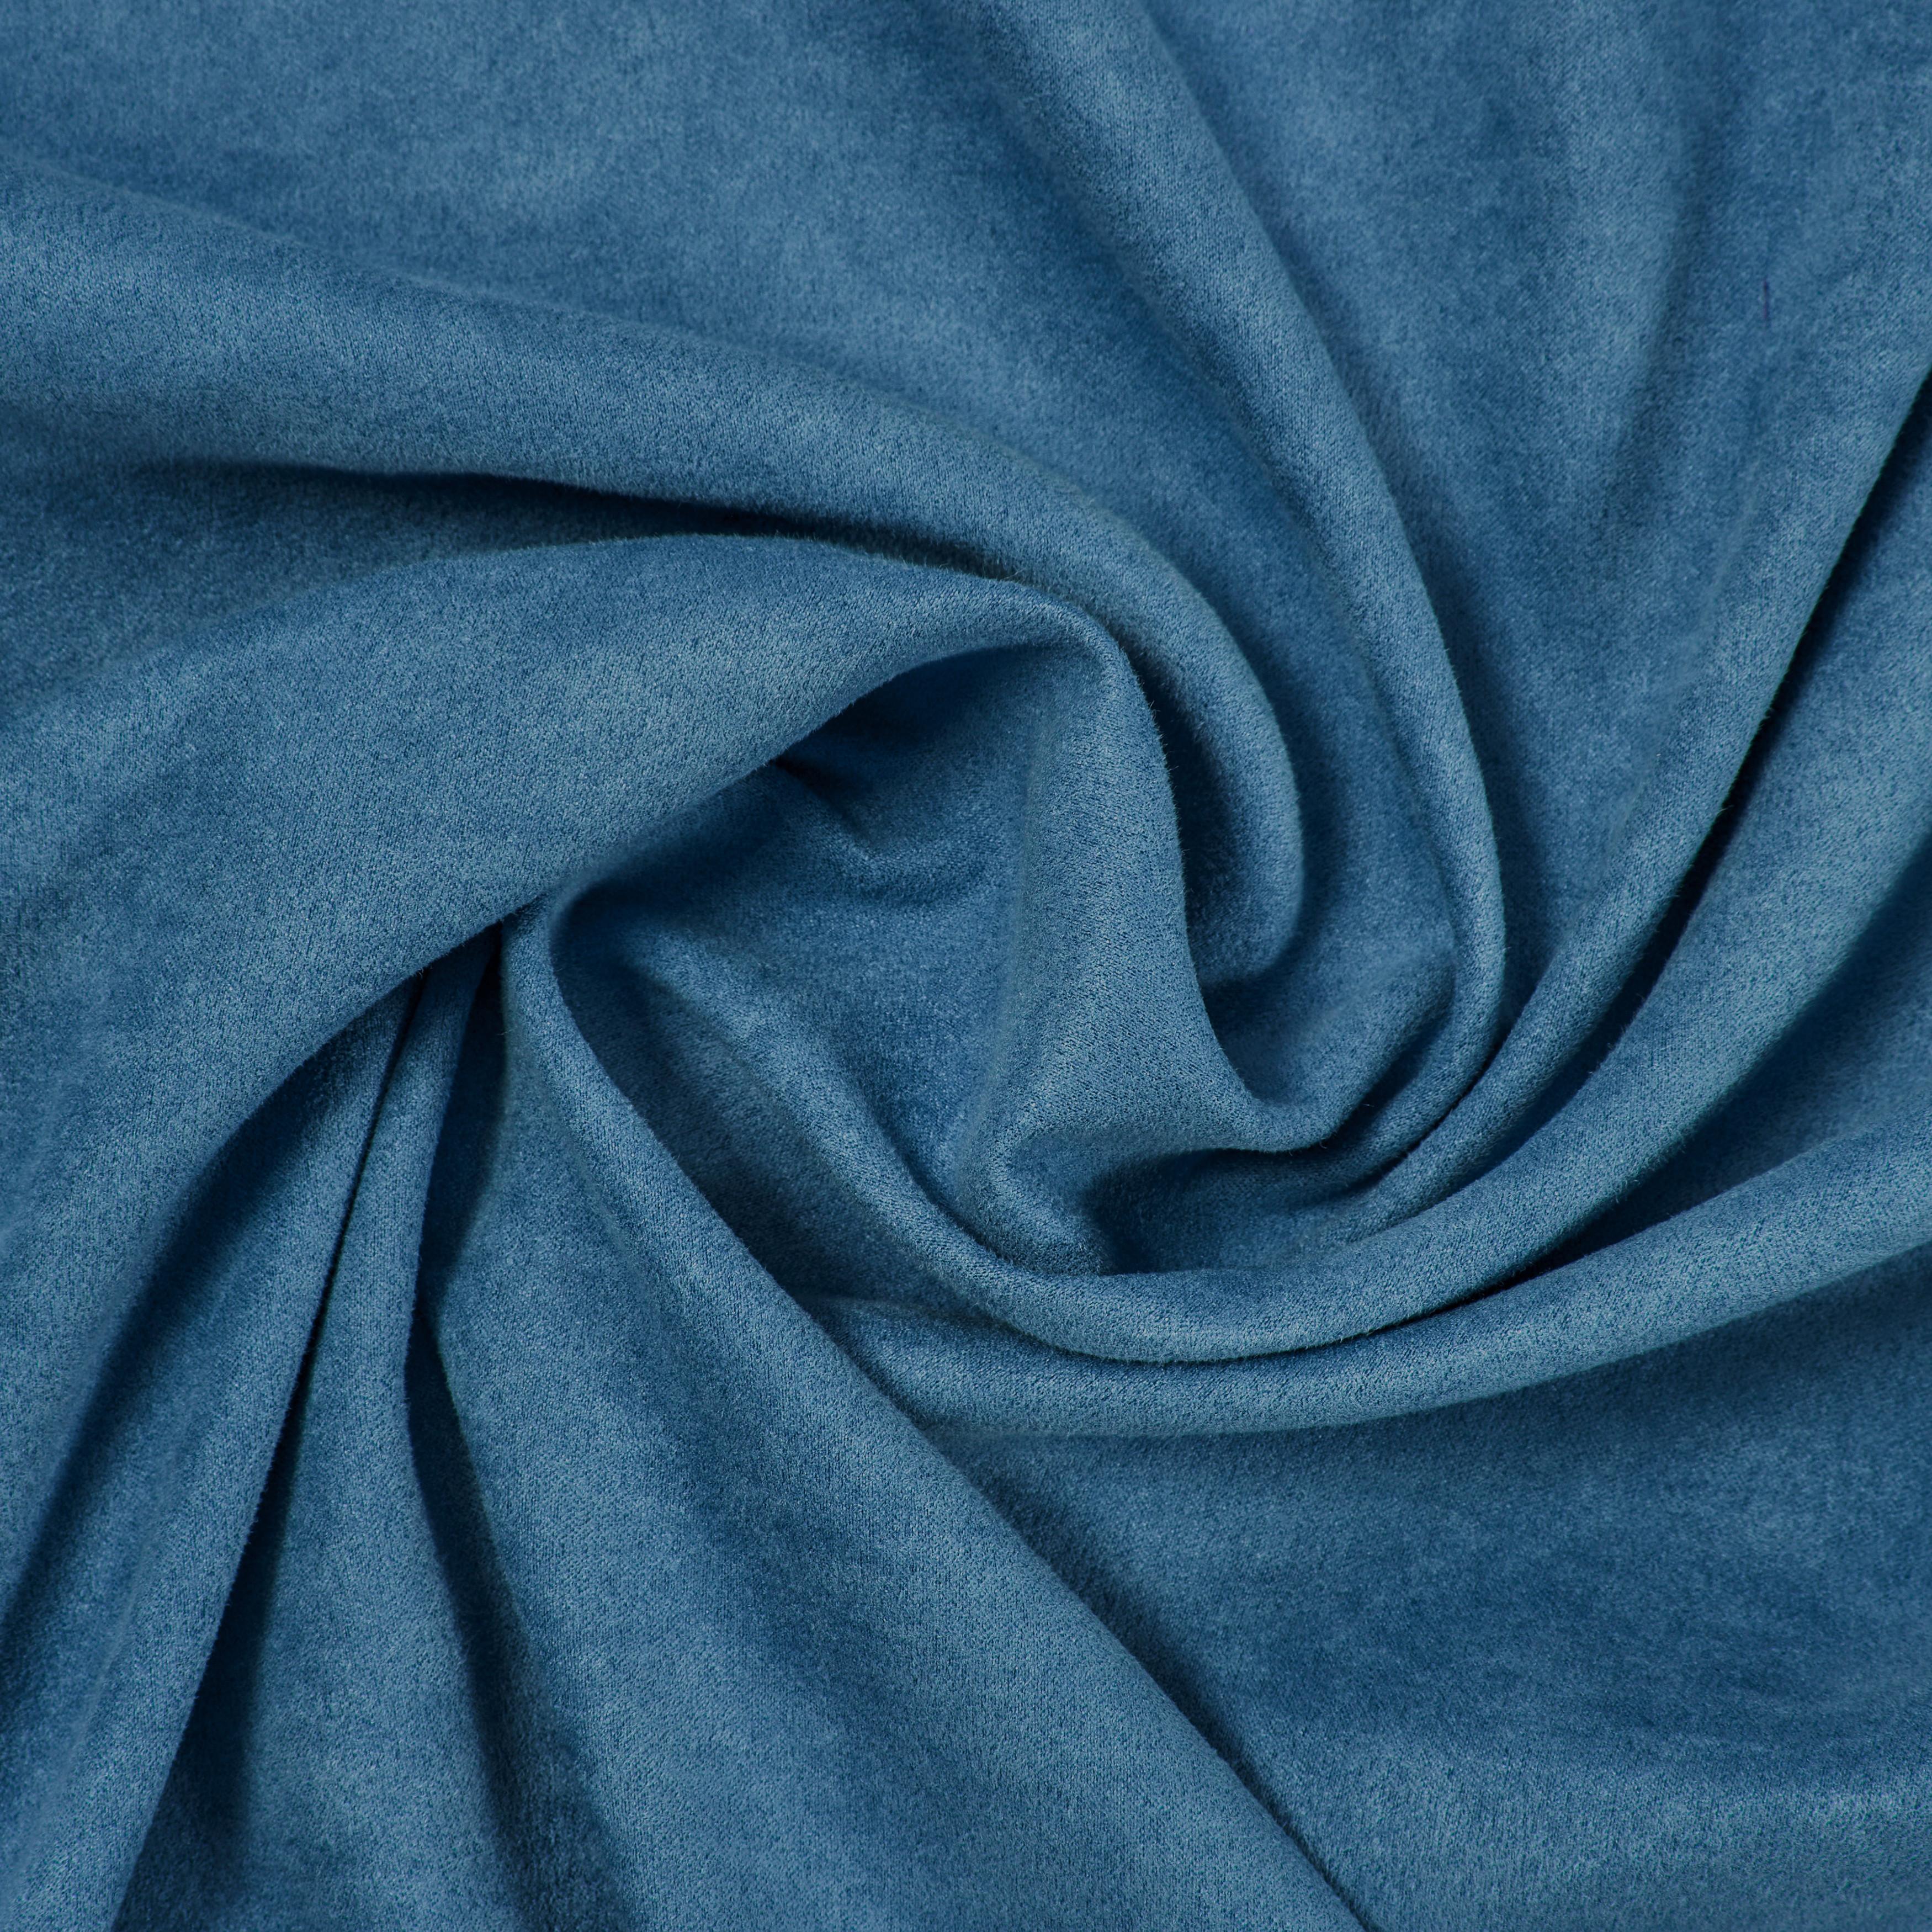 Zavesa Z Obročki Velours - modra, Konvencionalno, tekstil (140/245cm) - Modern Living